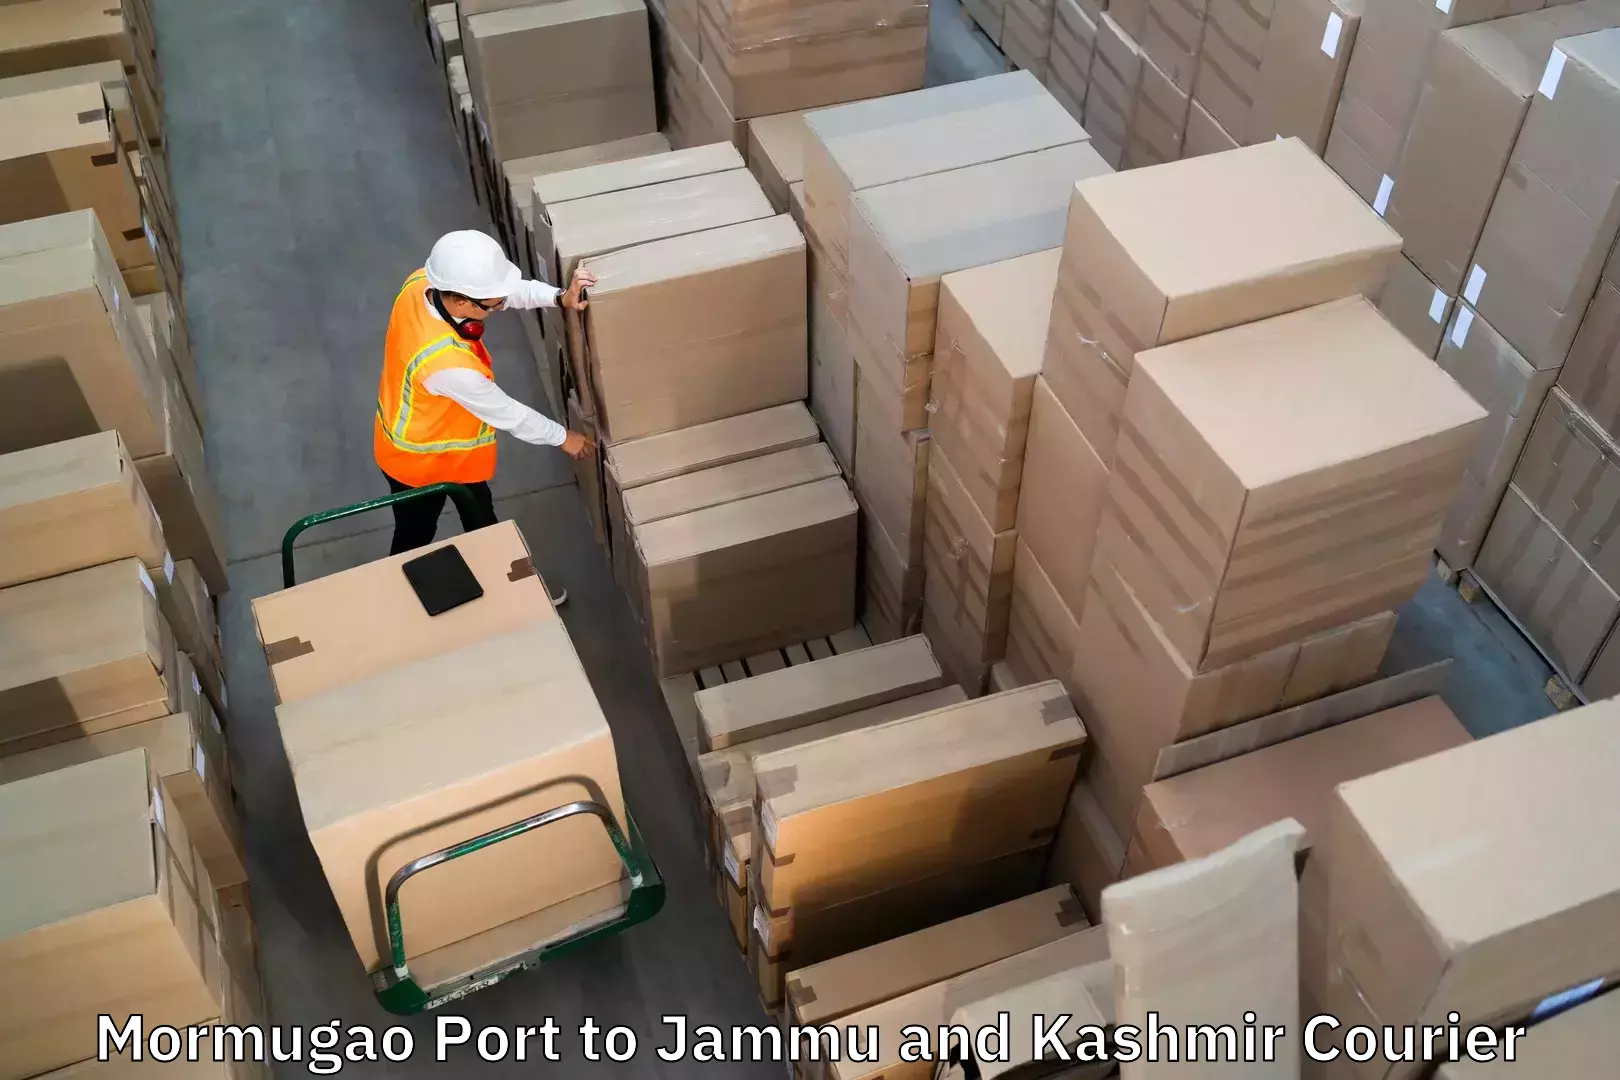 Budget-friendly baggage courier Mormugao Port to RS Pura